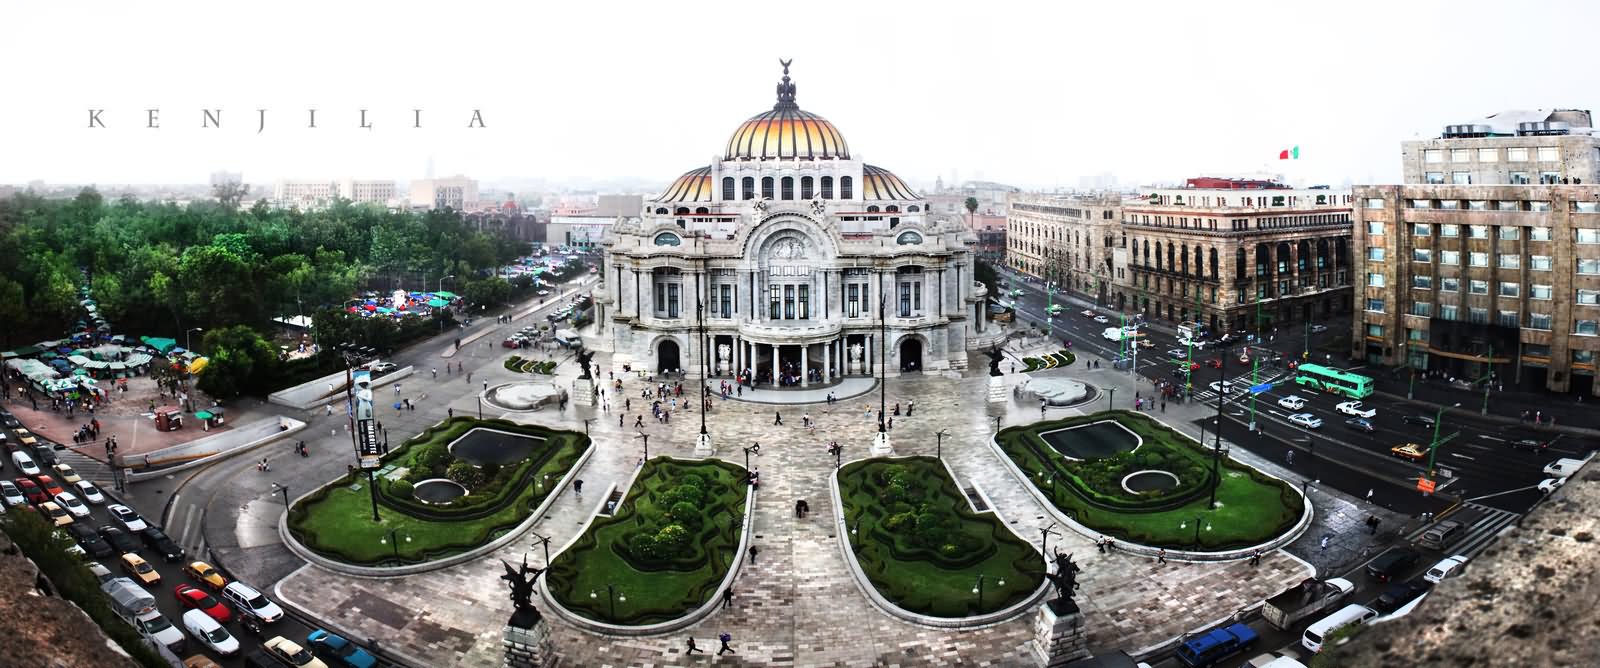 Panorama View Of The Palacio de Bellas Artes